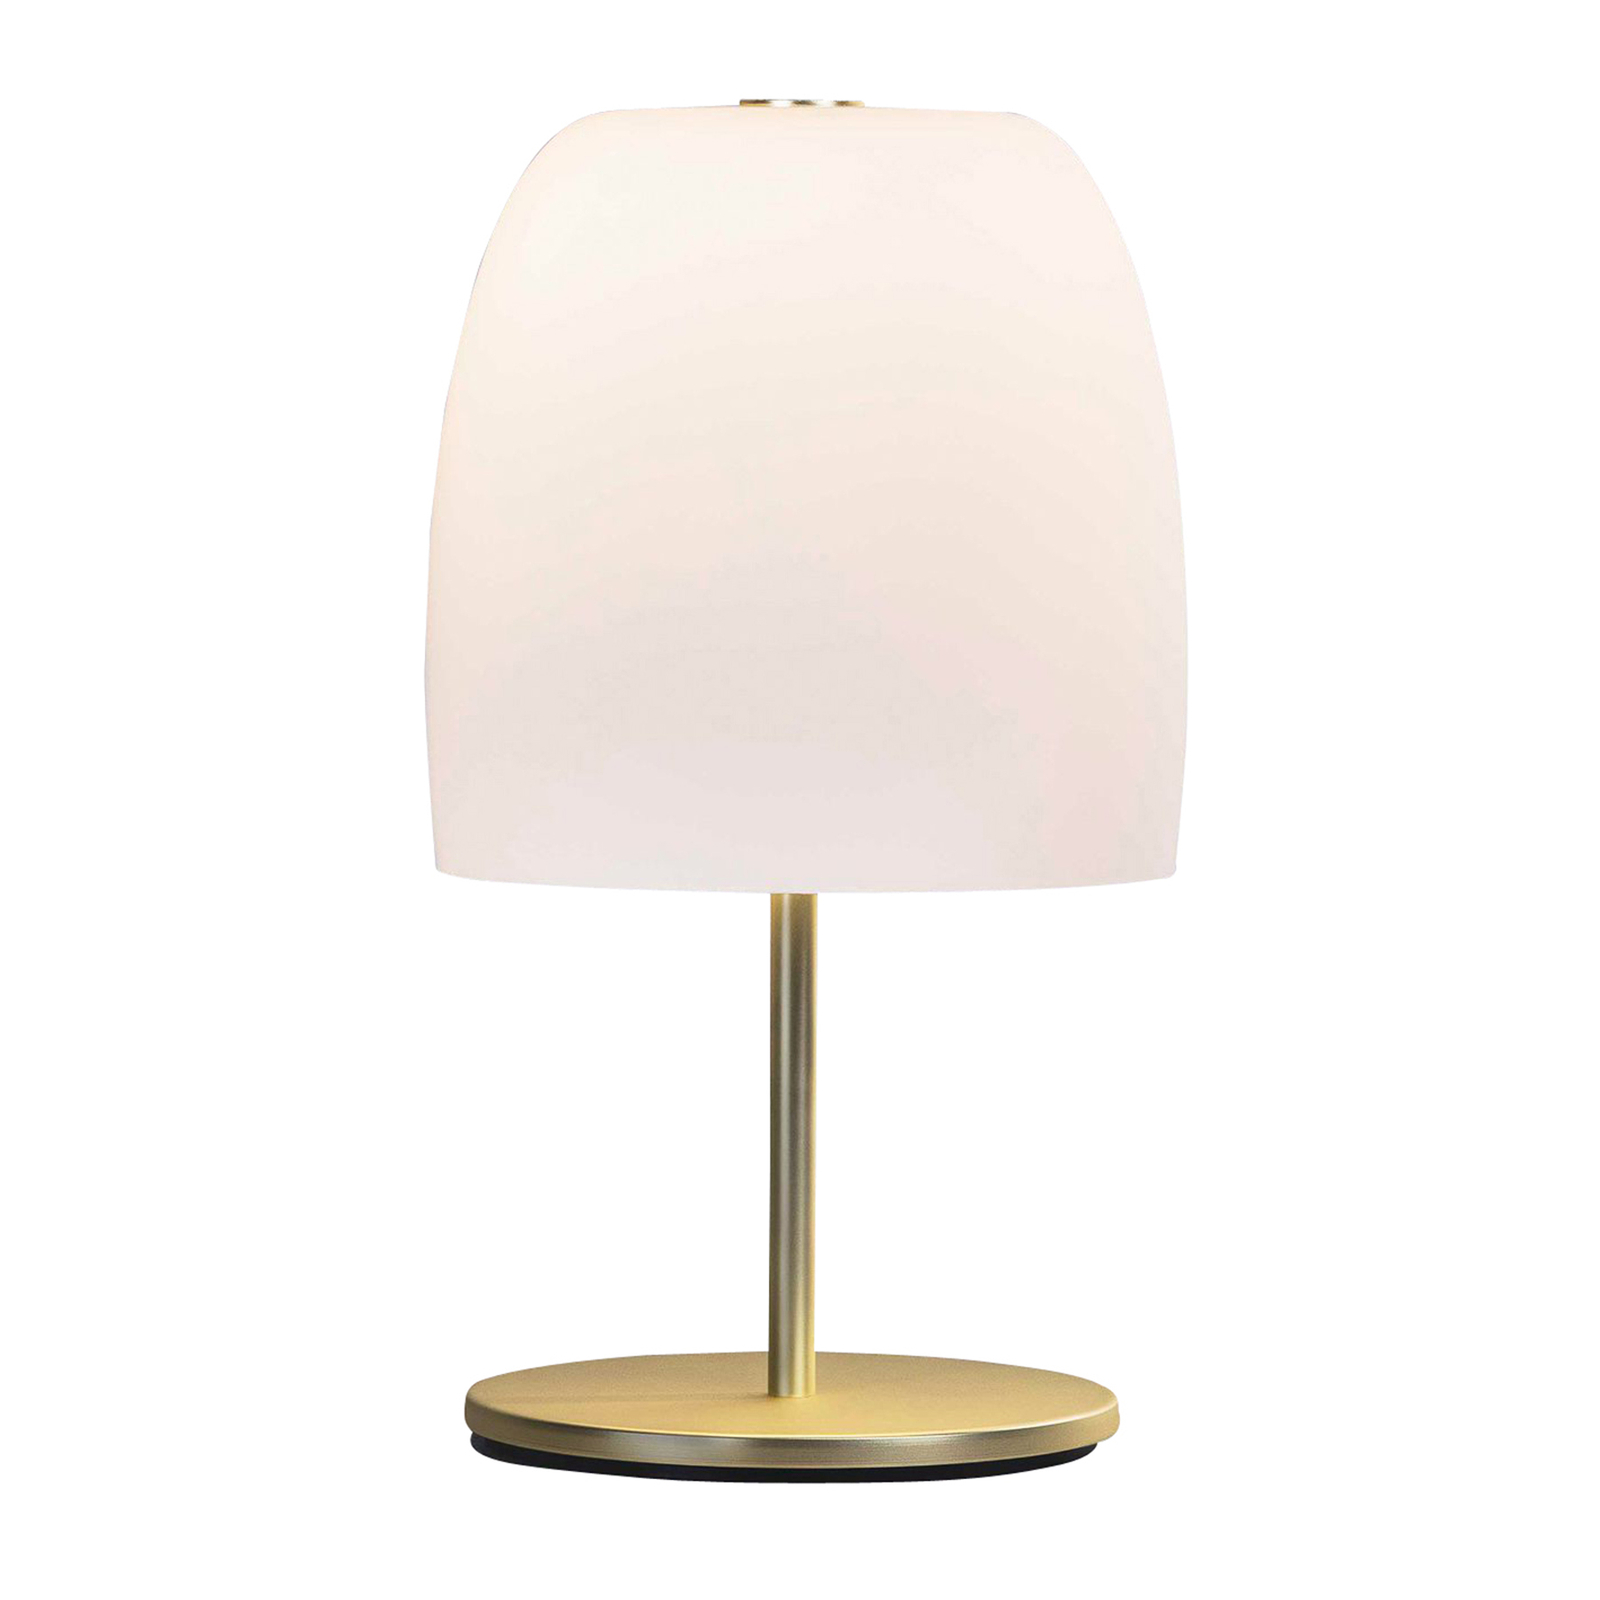 Prandina Notte T1 lampada da tavolo, ottone/bianco